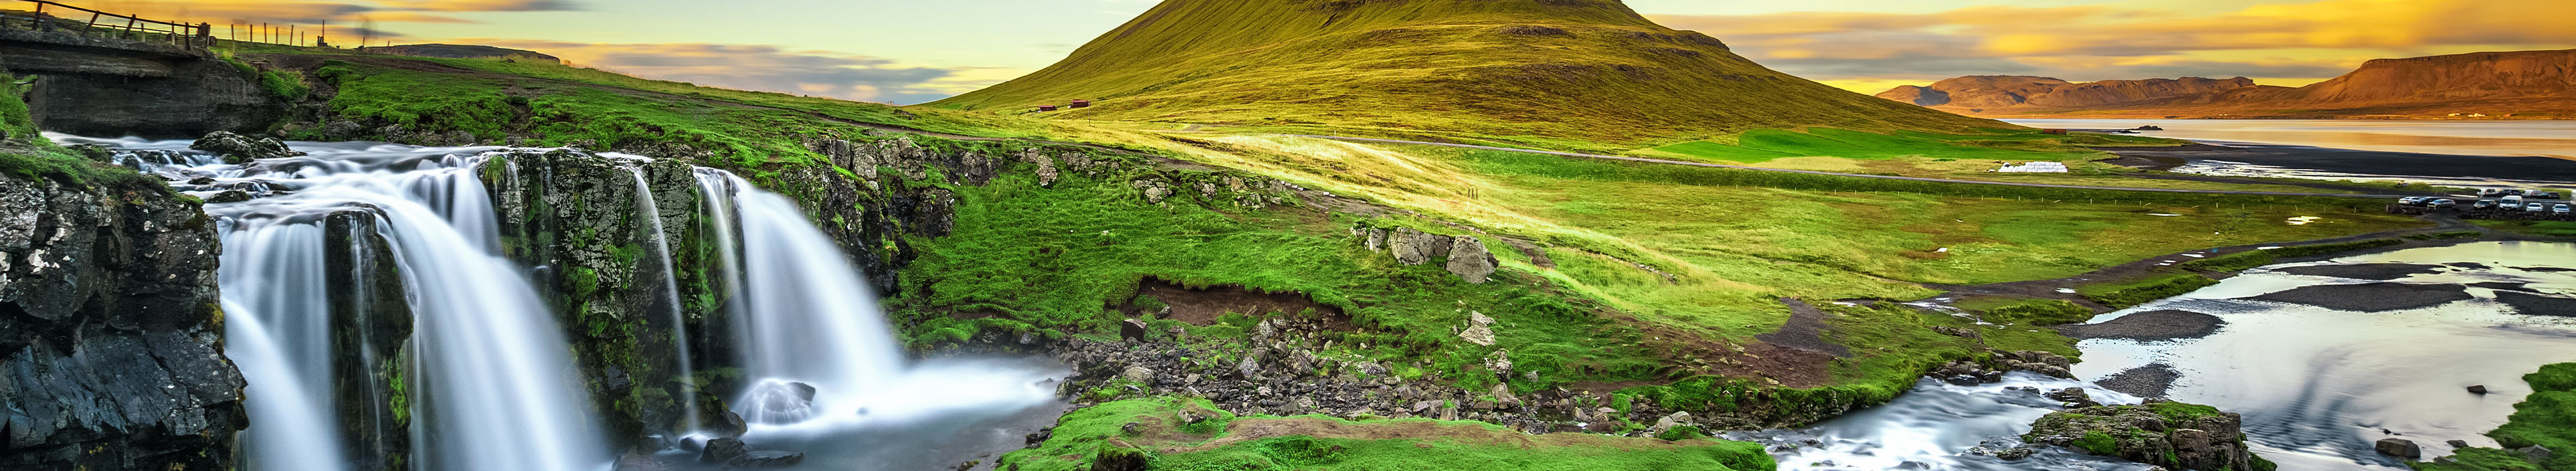 Urlaub Island. Kleiner Wasserfall, der durch von moosbedeckten Felsen fließt.